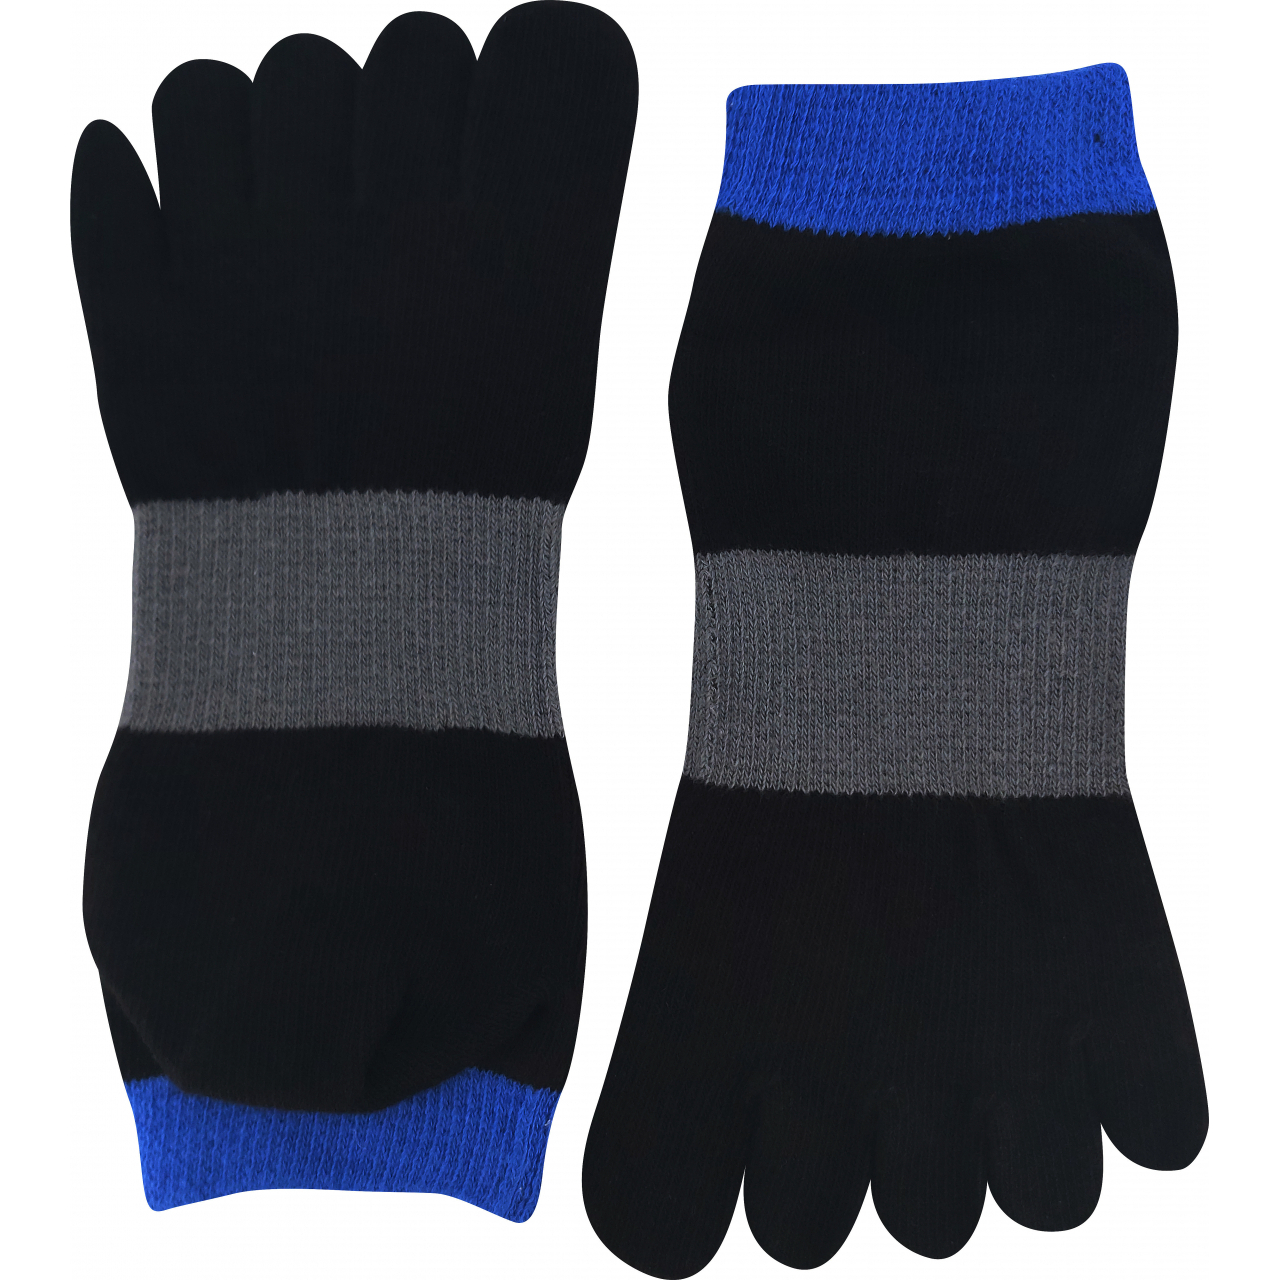 Ponožky unisex Boma Prstan-a 11 - černé-modré, 42-46